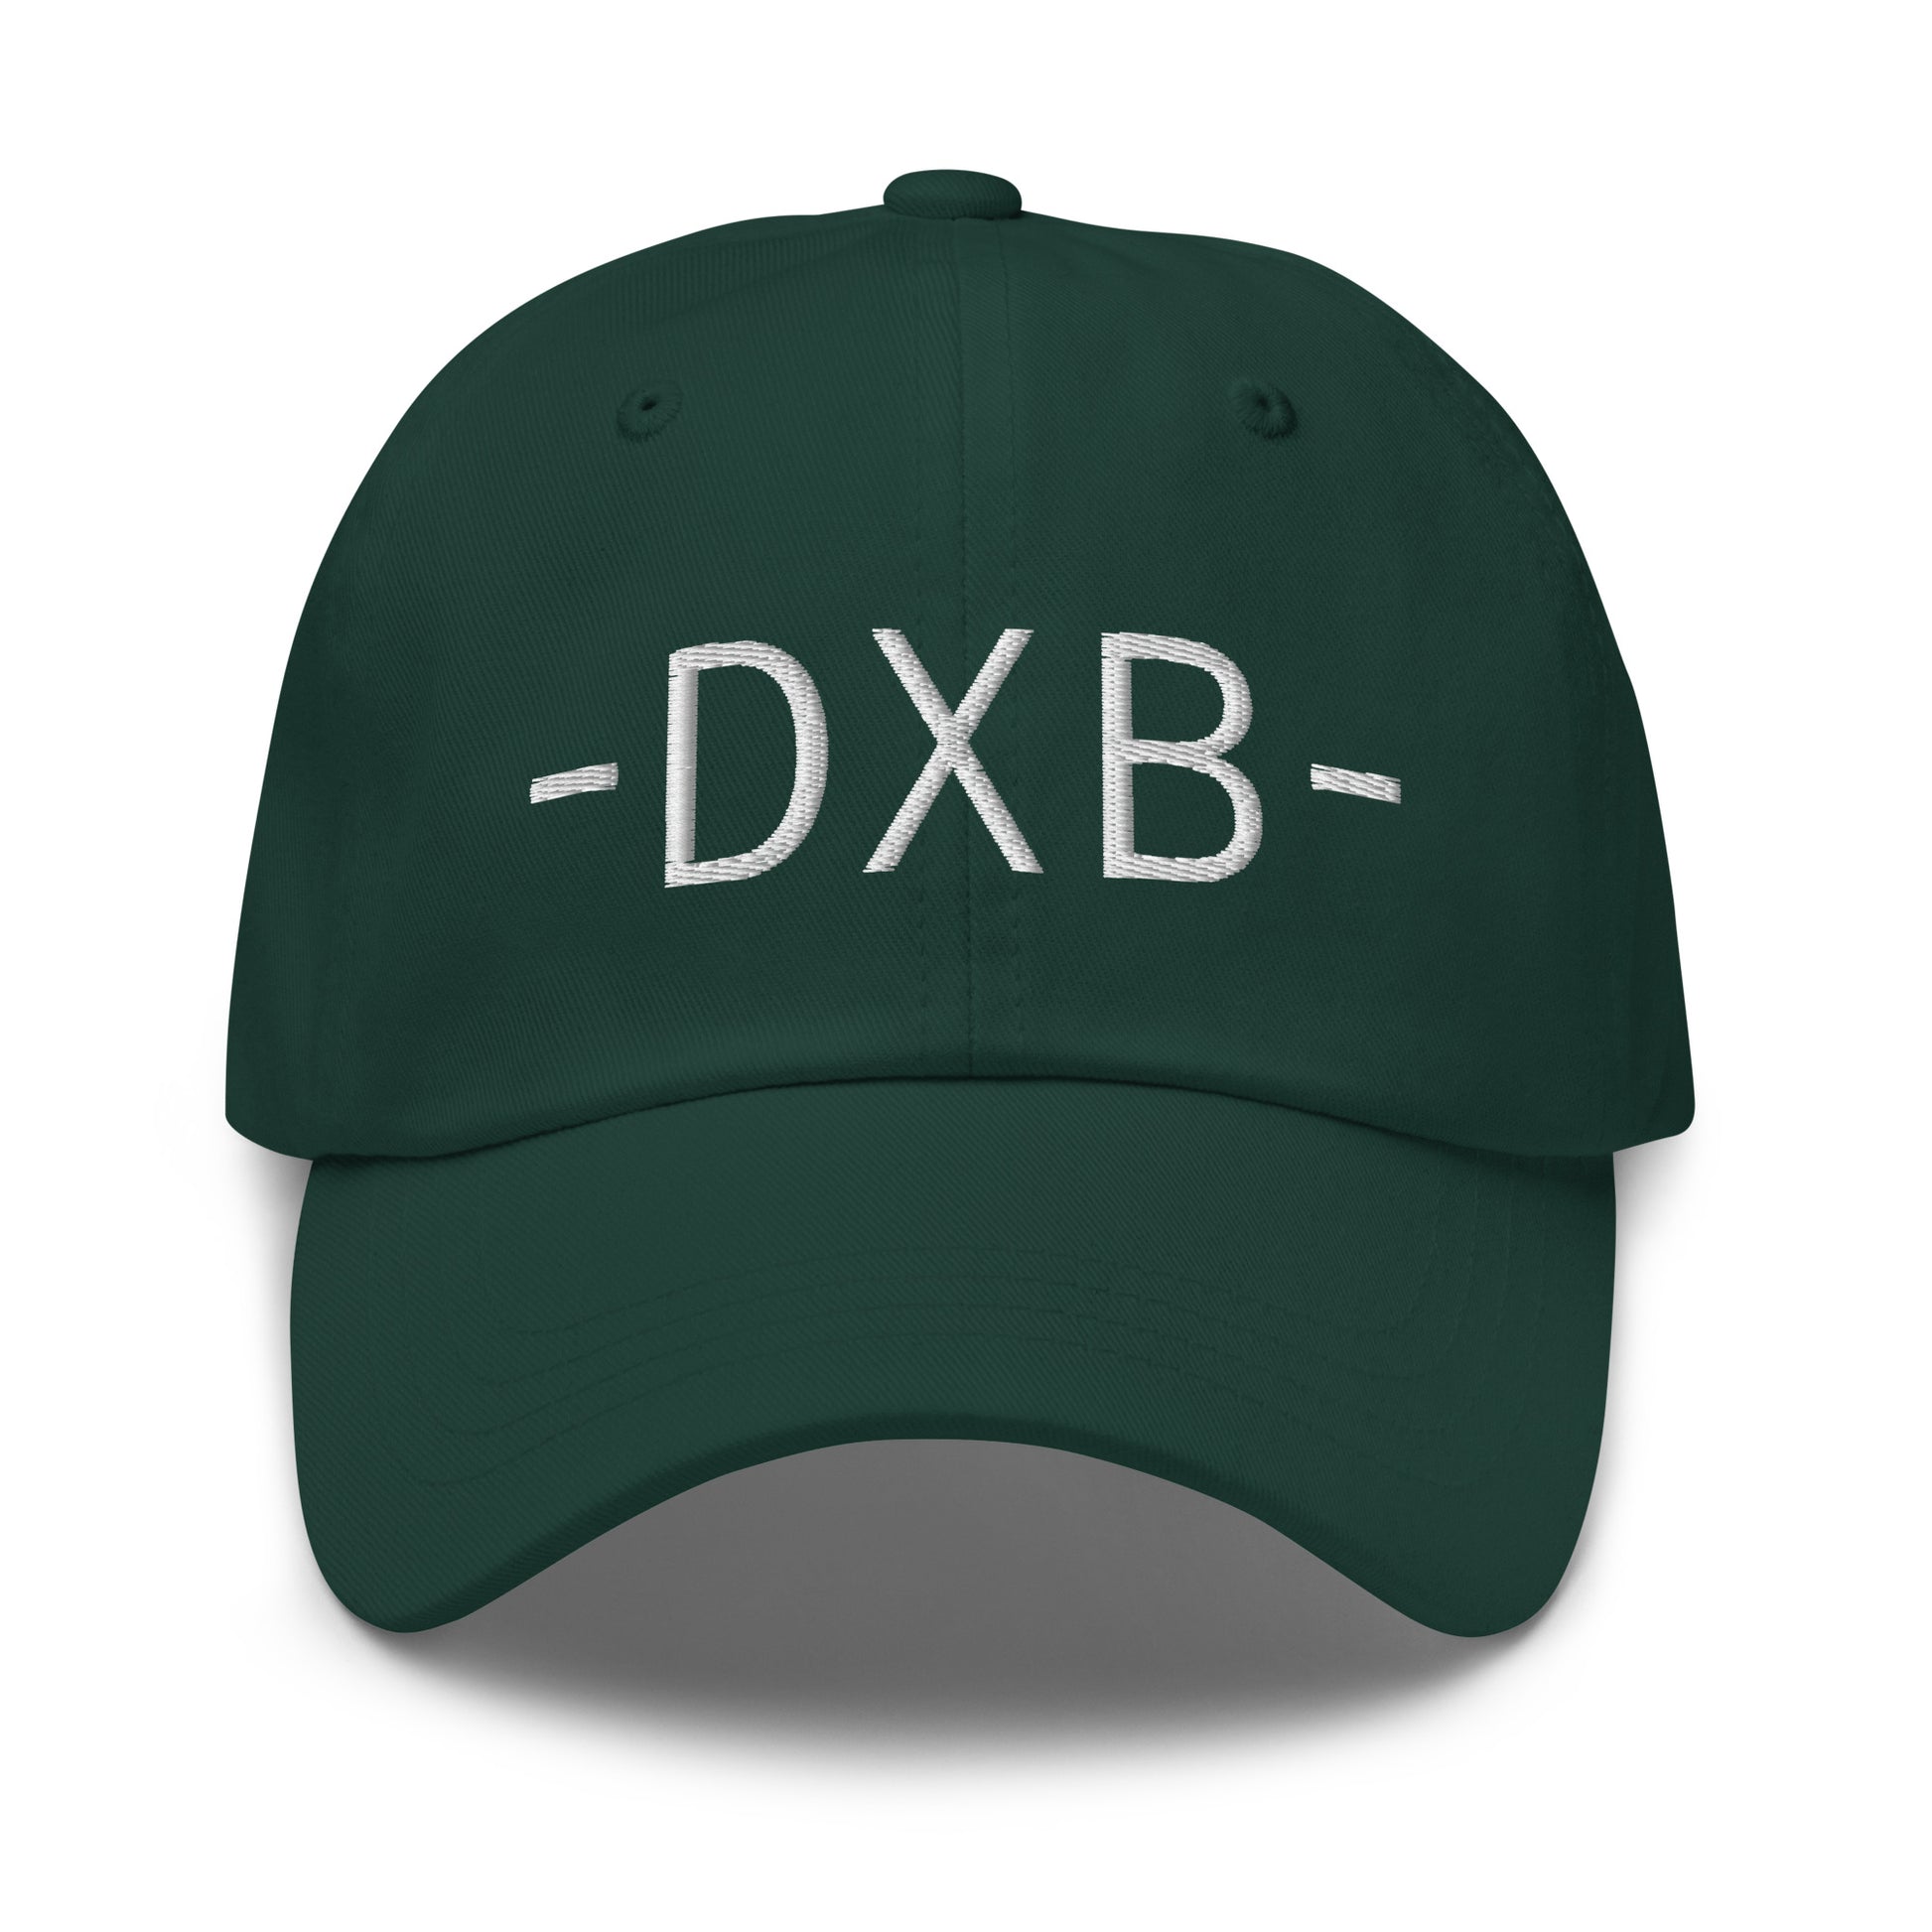 Souvenir Baseball Cap - White • DXB Dubai • YHM Designs - Image 17